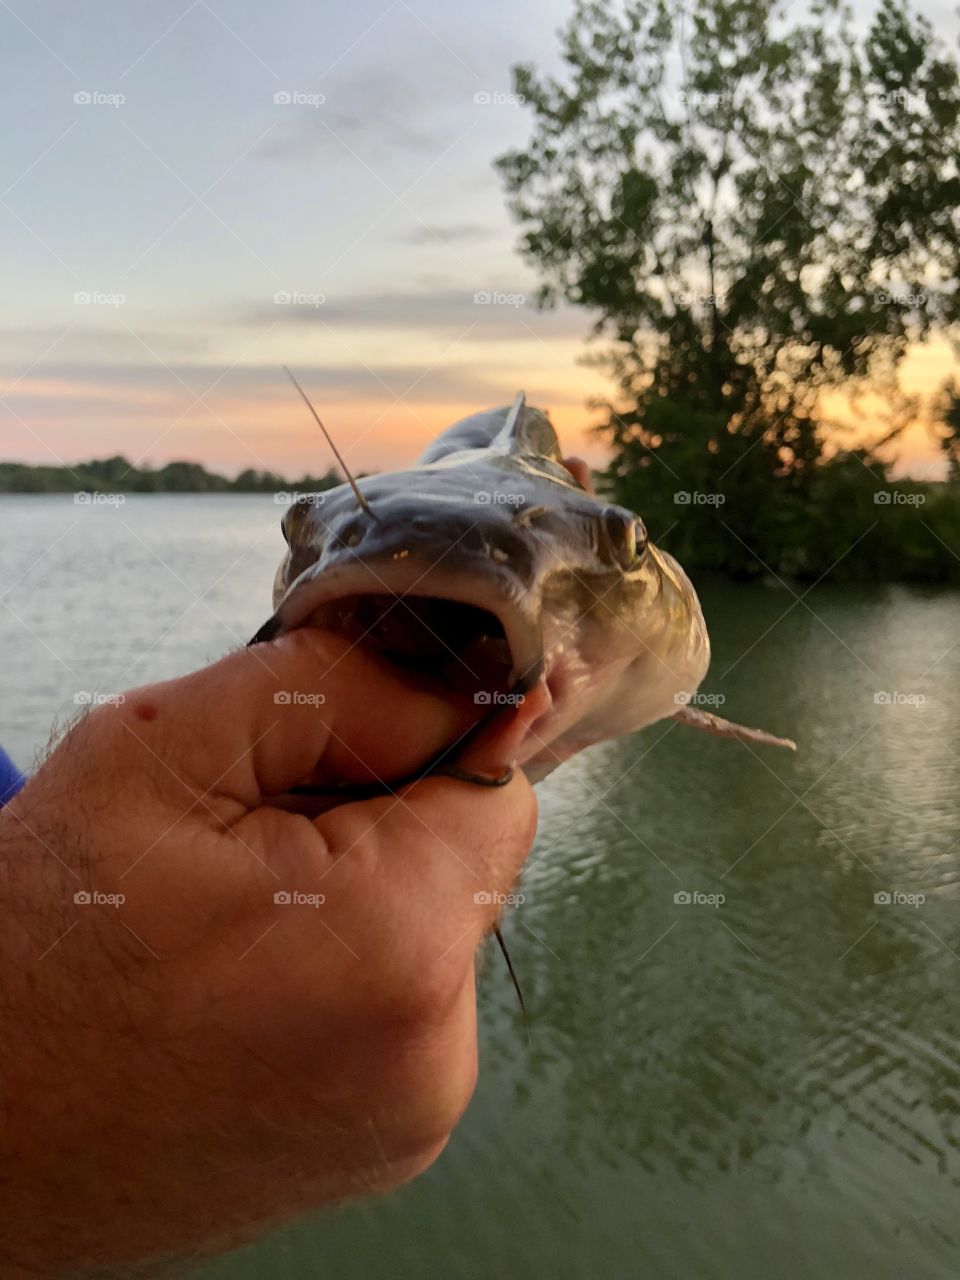 Cat fish caught at sunset 